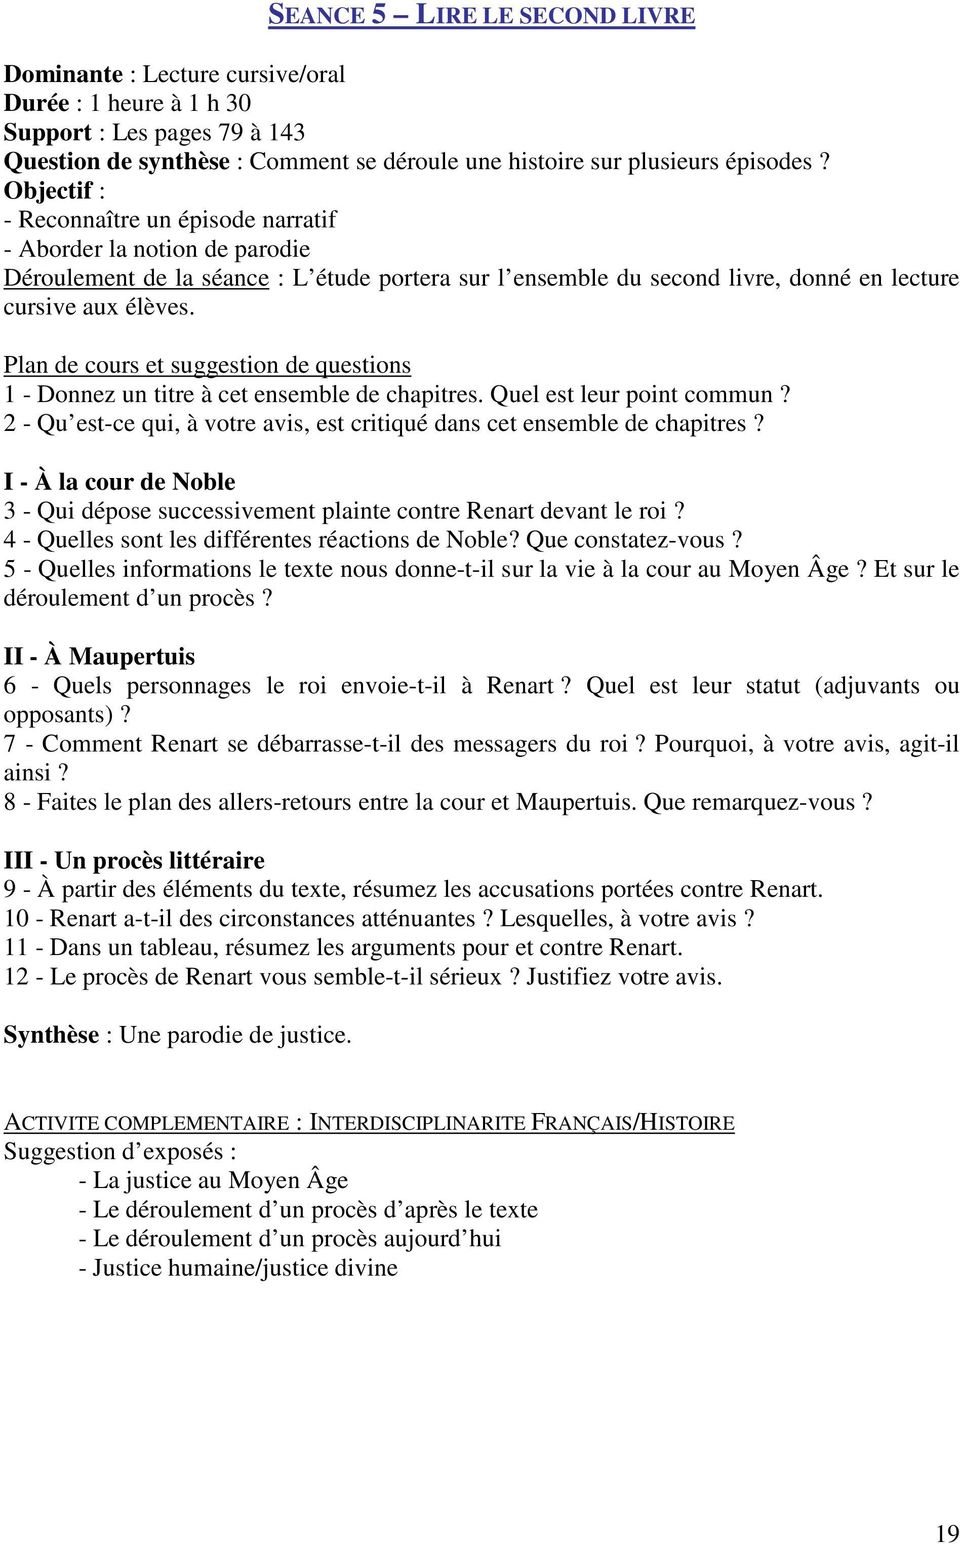 Résumé Le Roman De Renart Par Chapitre Lire Le Roman de Renart en 5 e - PDF Téléchargement Gratuit